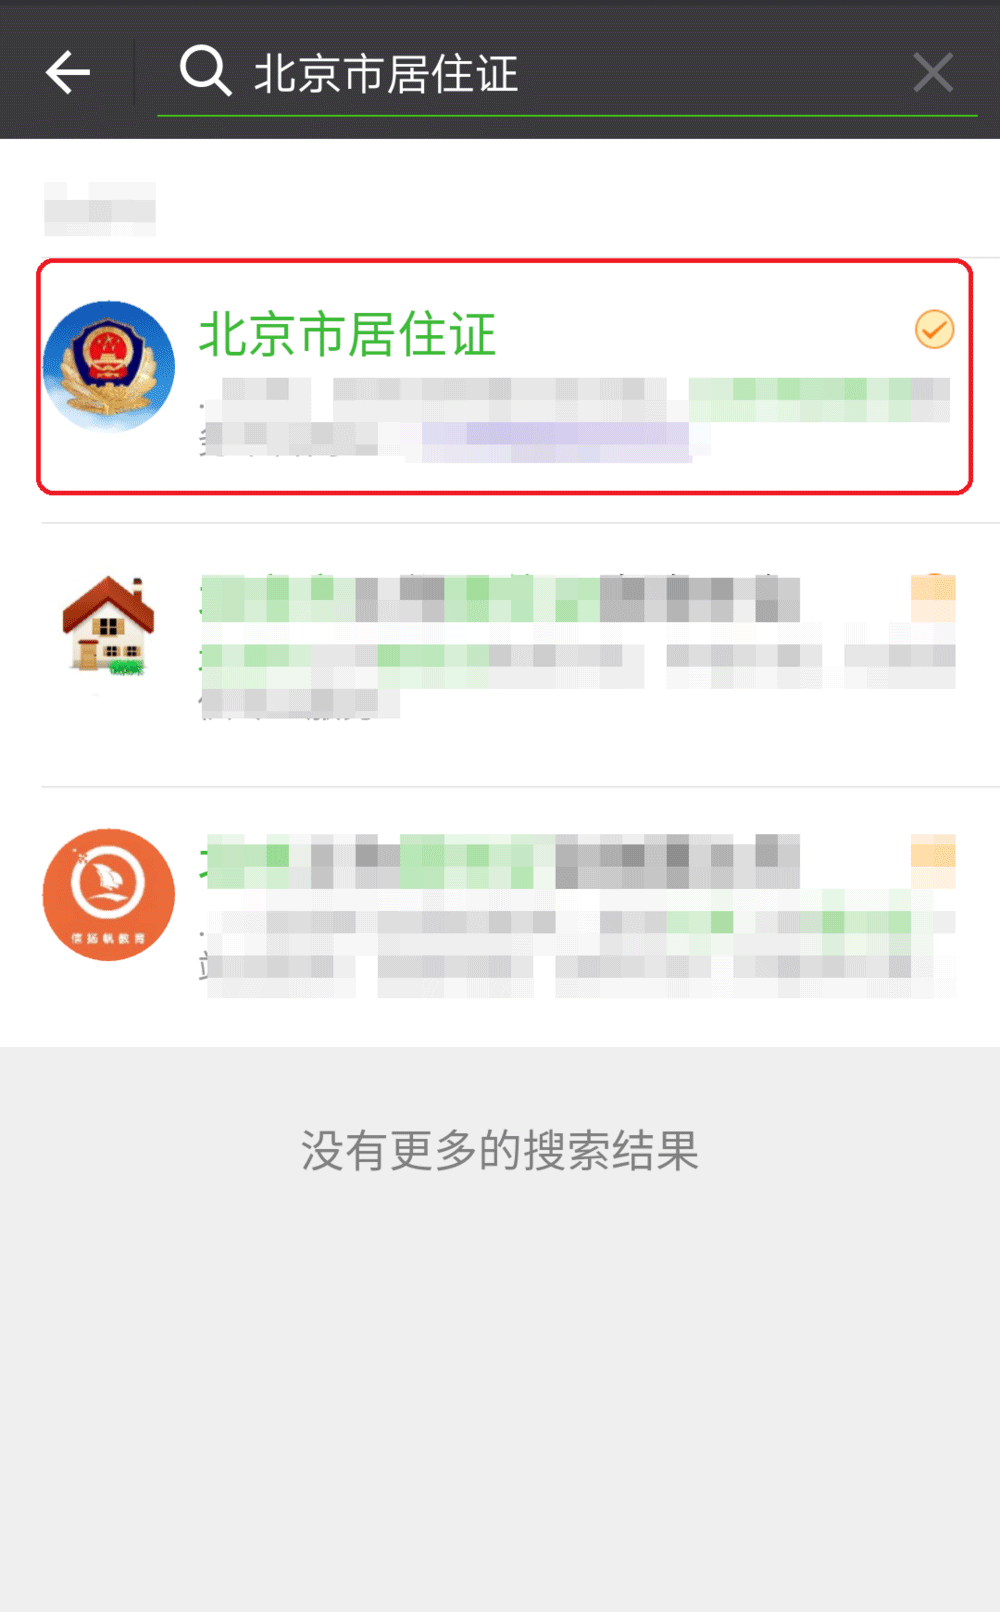 在微信公众号中进行北京市居住证申办签注的方法介绍